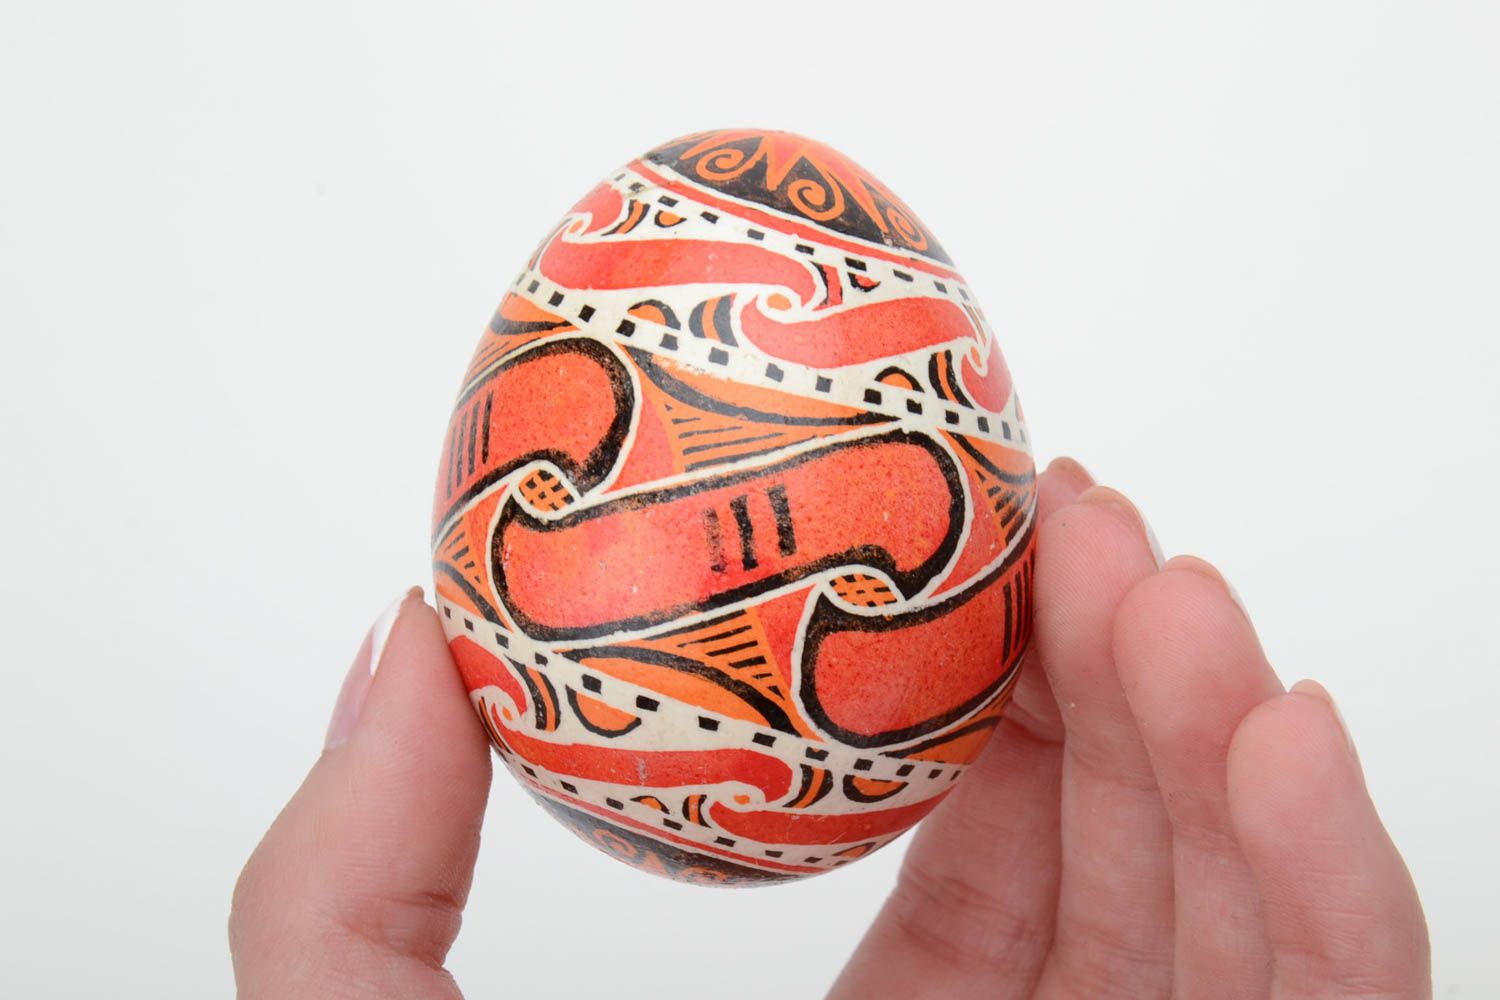 Авторское расписное куриное яйцо ручной работы красивое в восковой технике фото 5